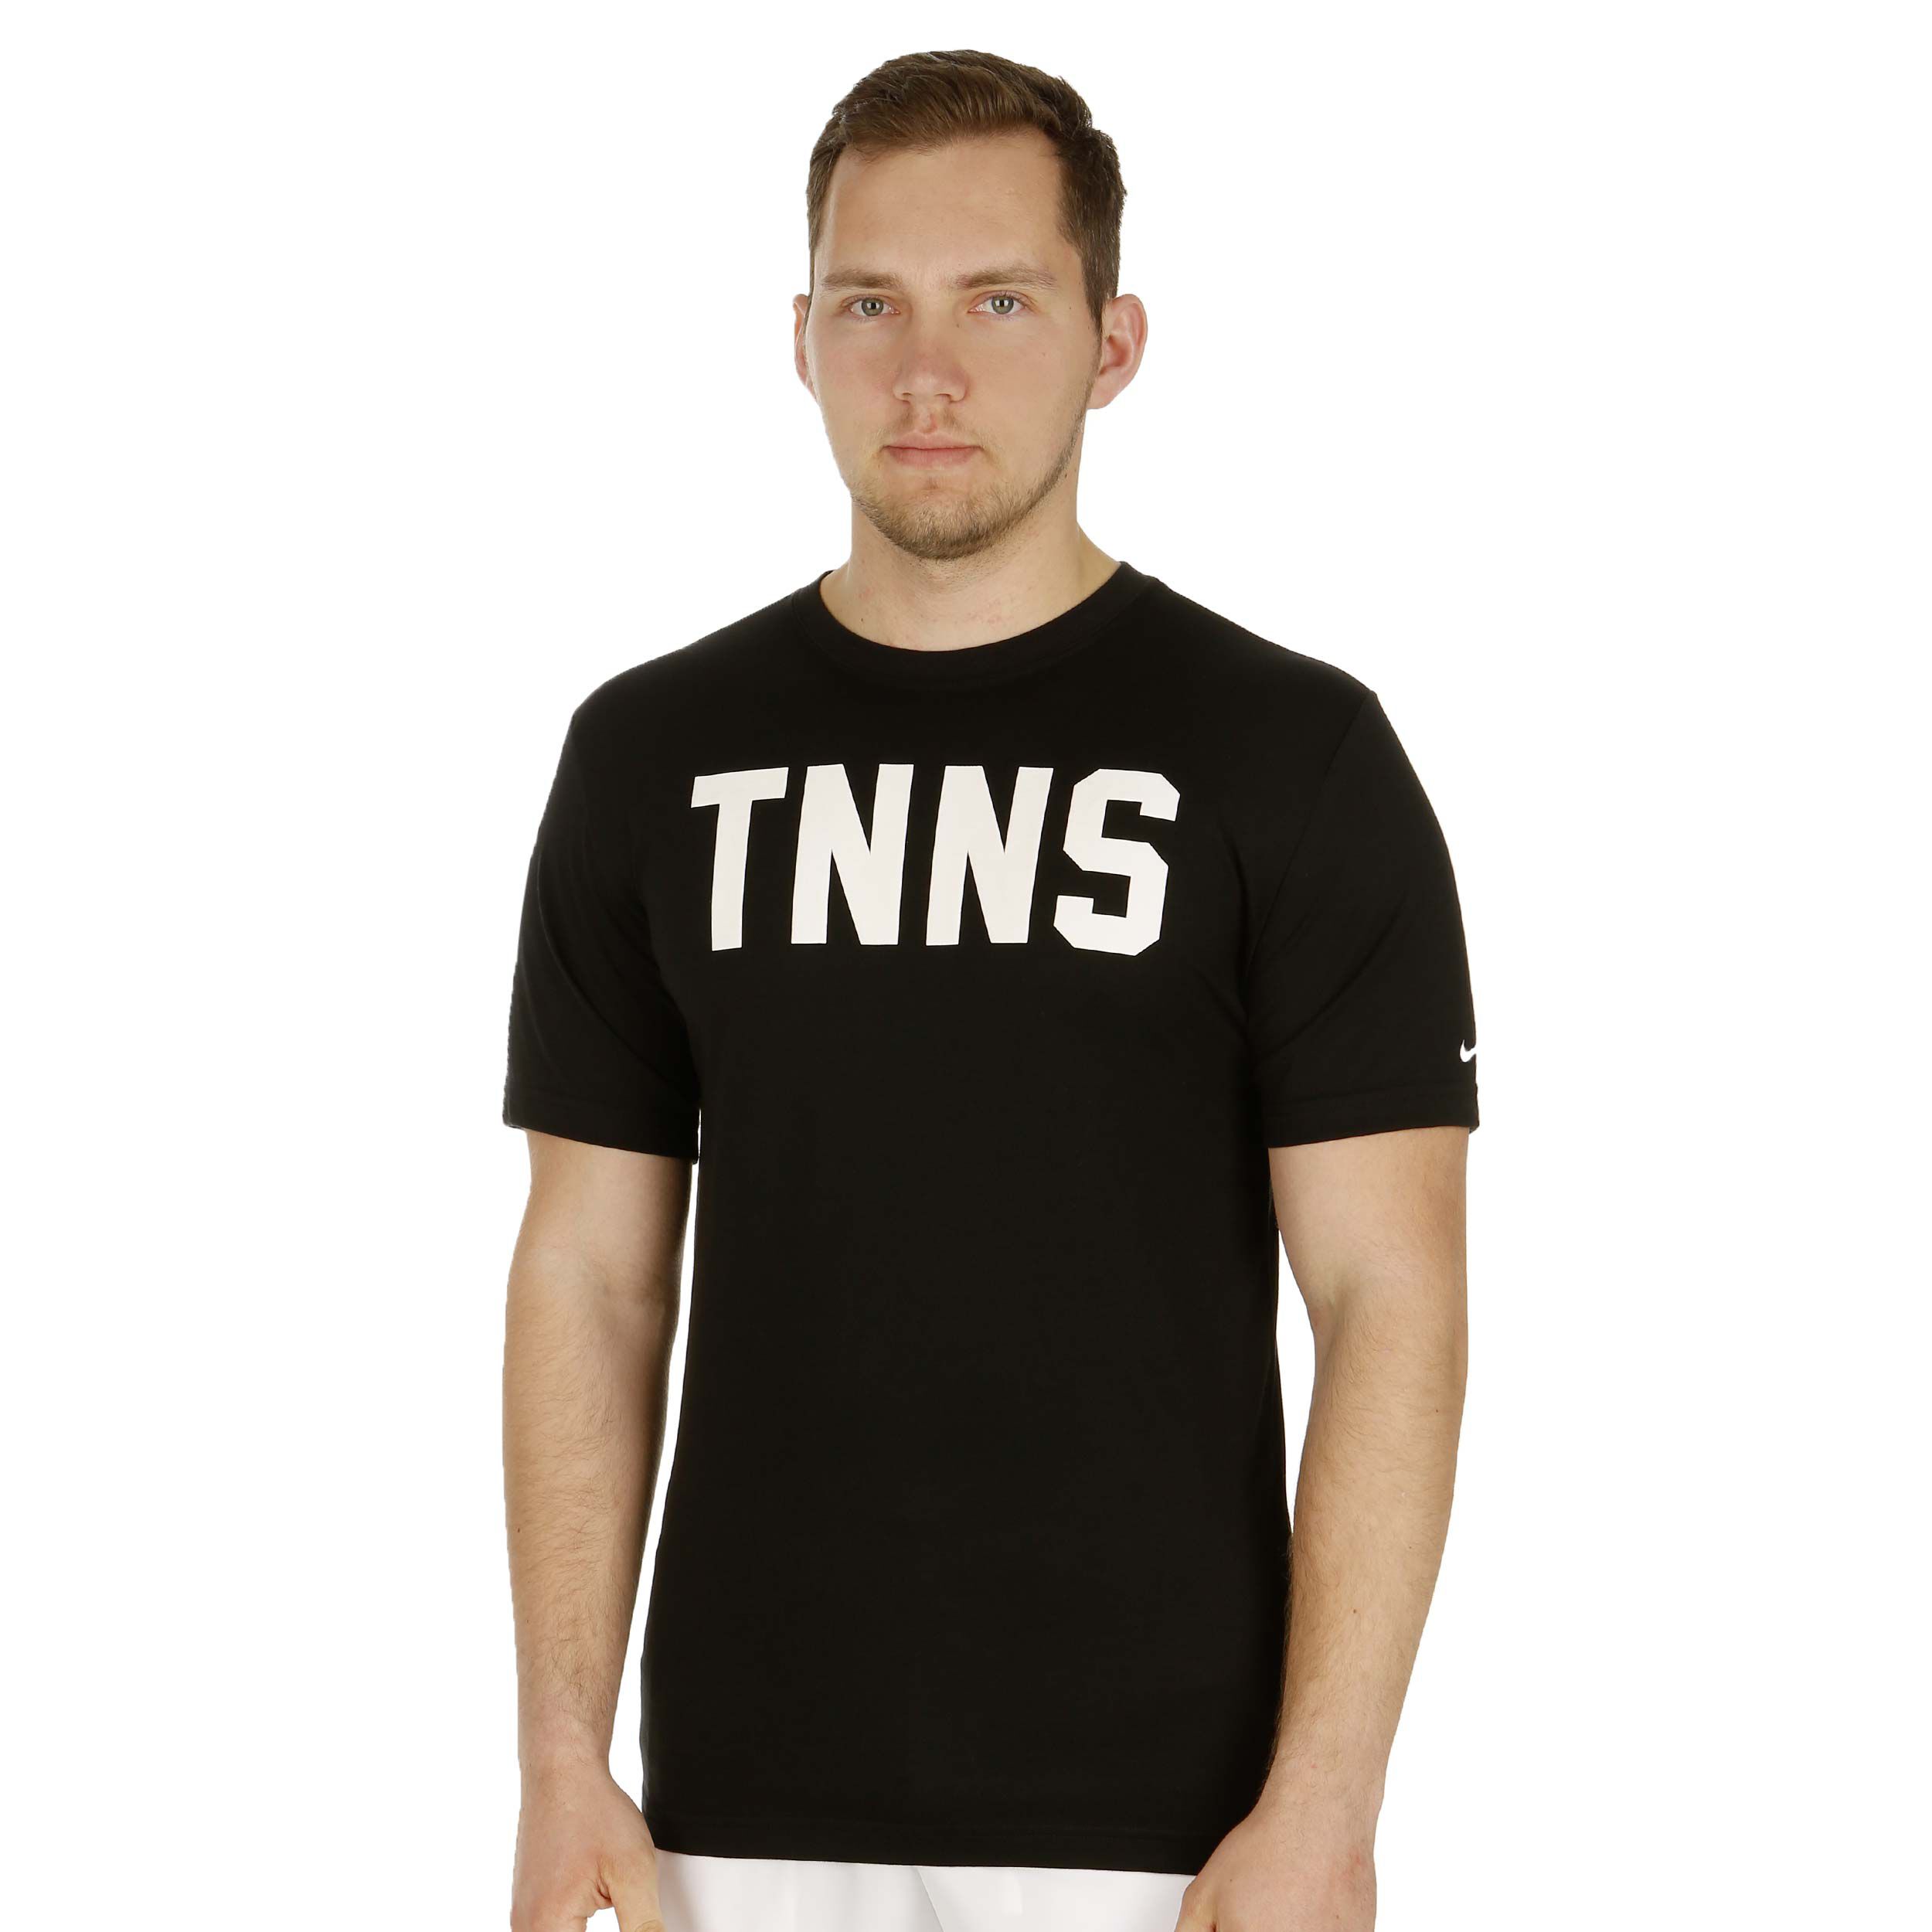 buy Nike Tnns T-Shirt Men - Black 